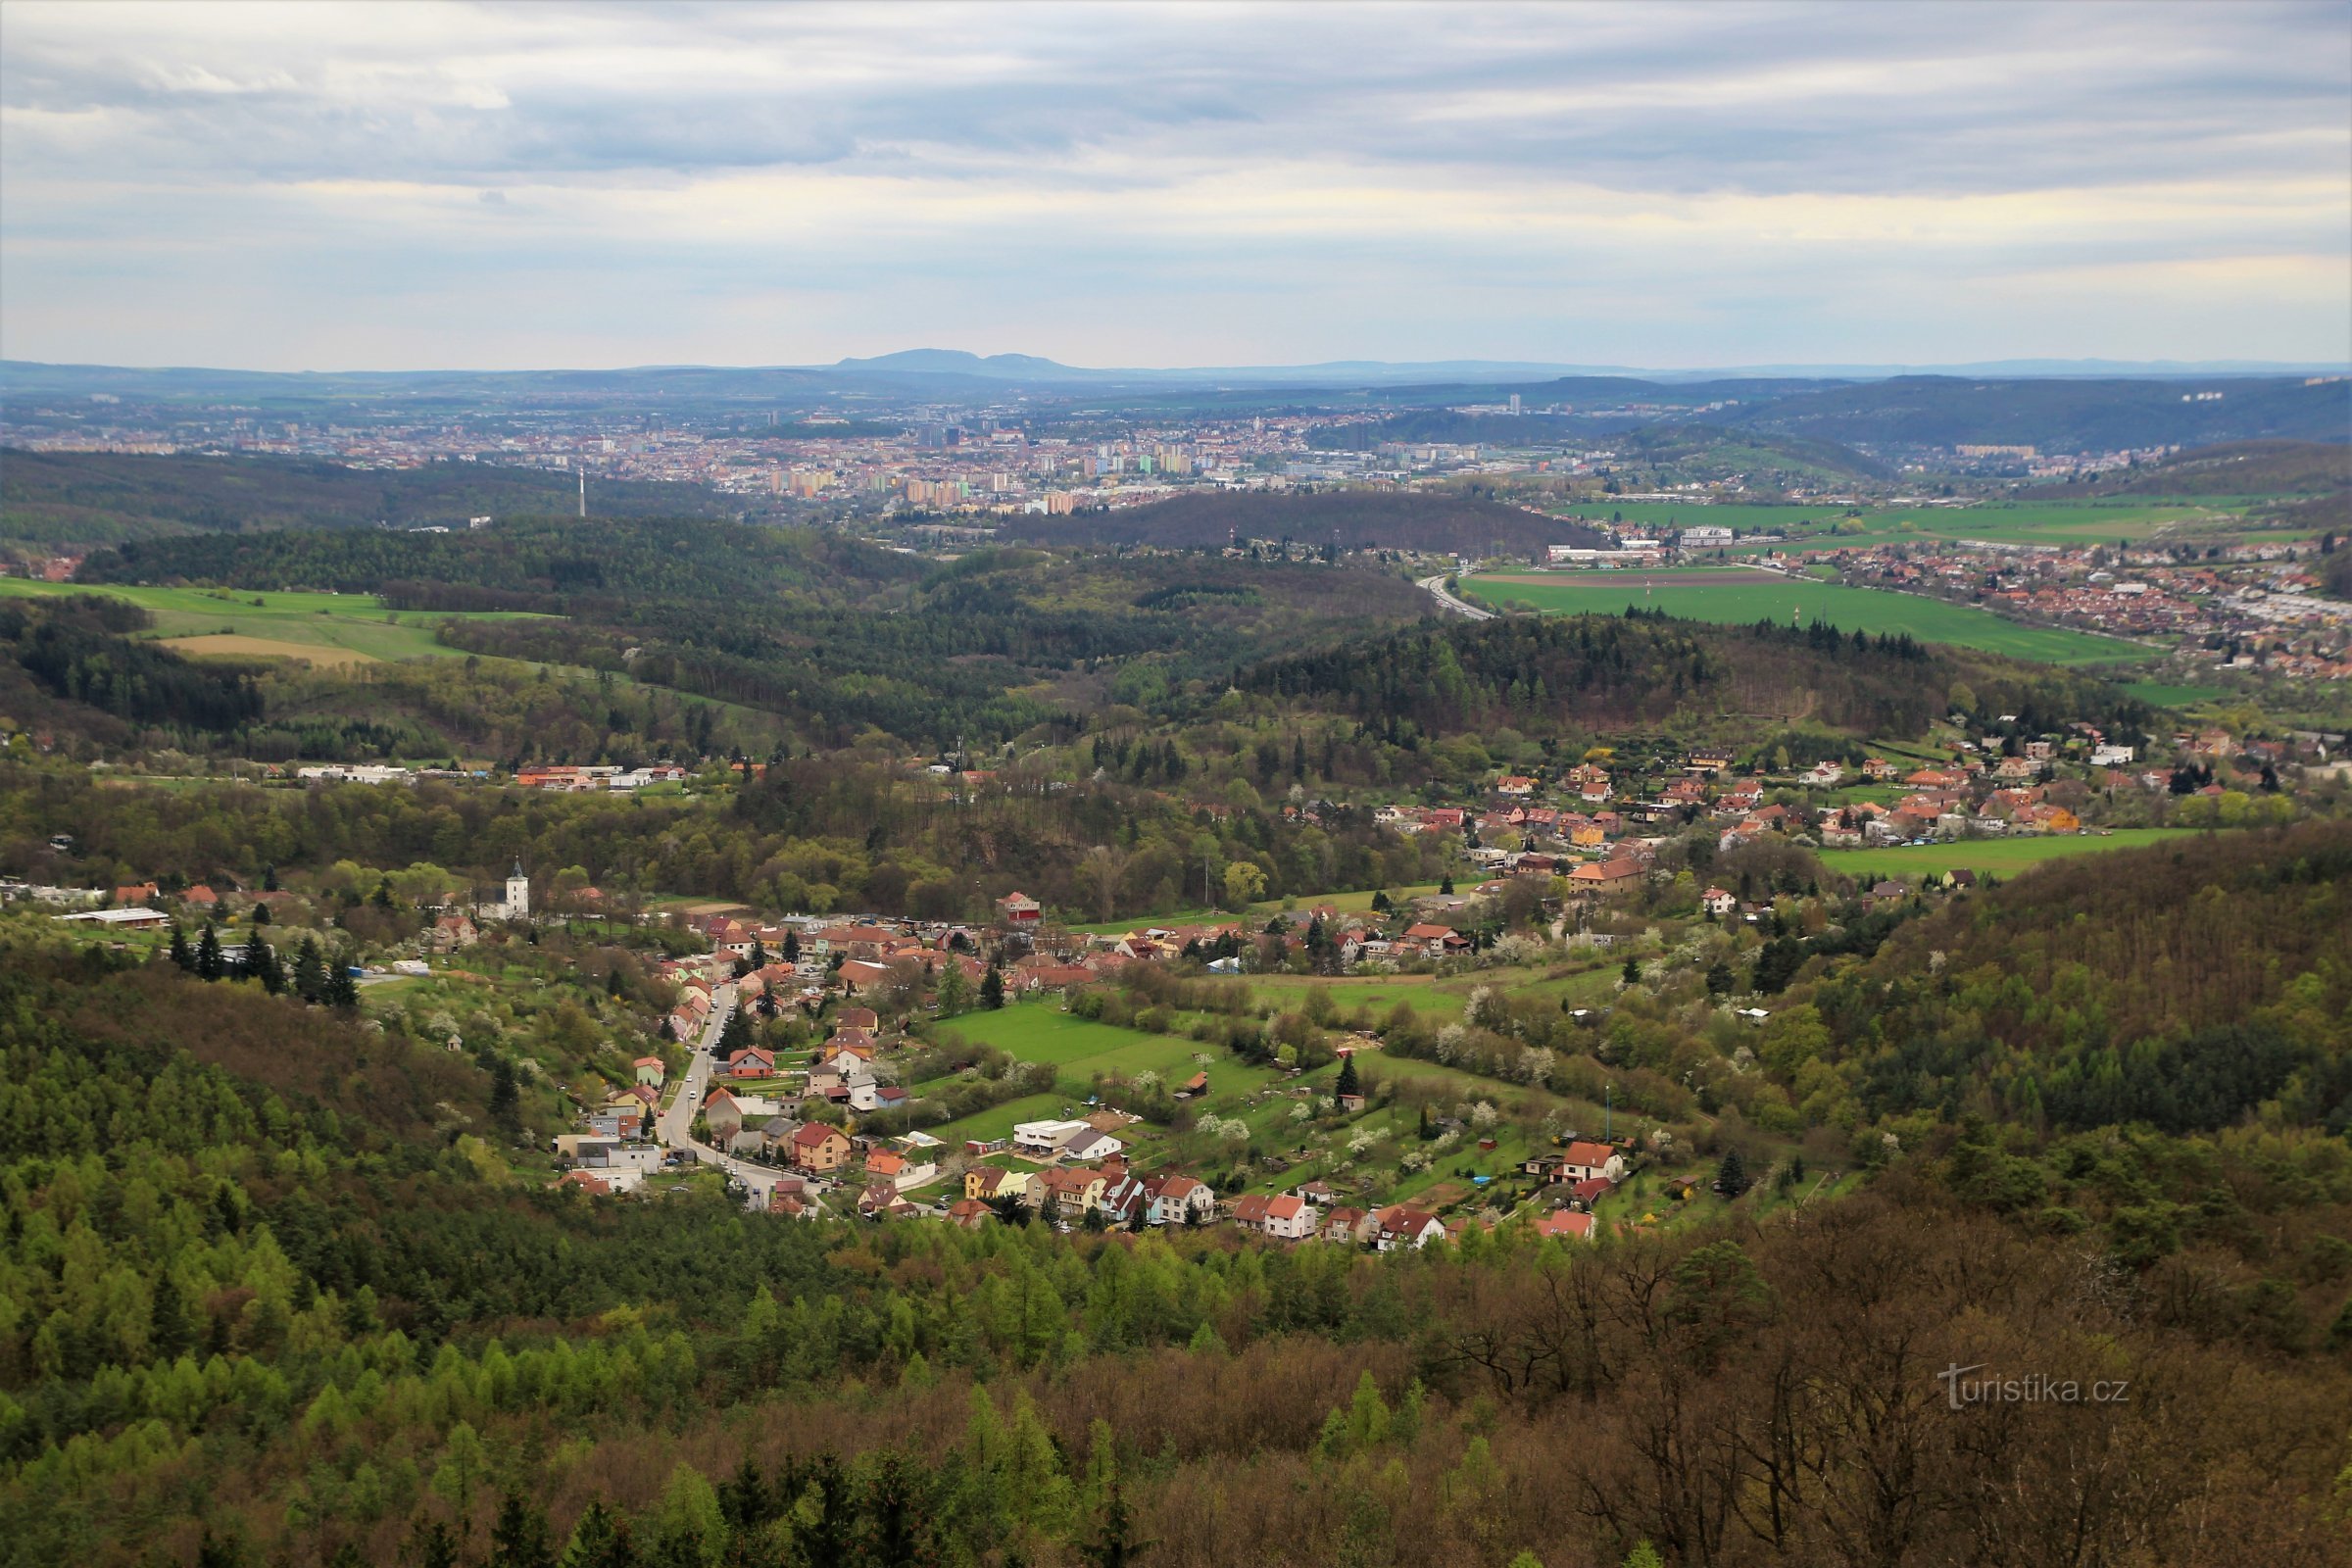 Näkymä kohti Brnoa, etualalla Lelekovice, taustalla horisontissa Pálavan harju